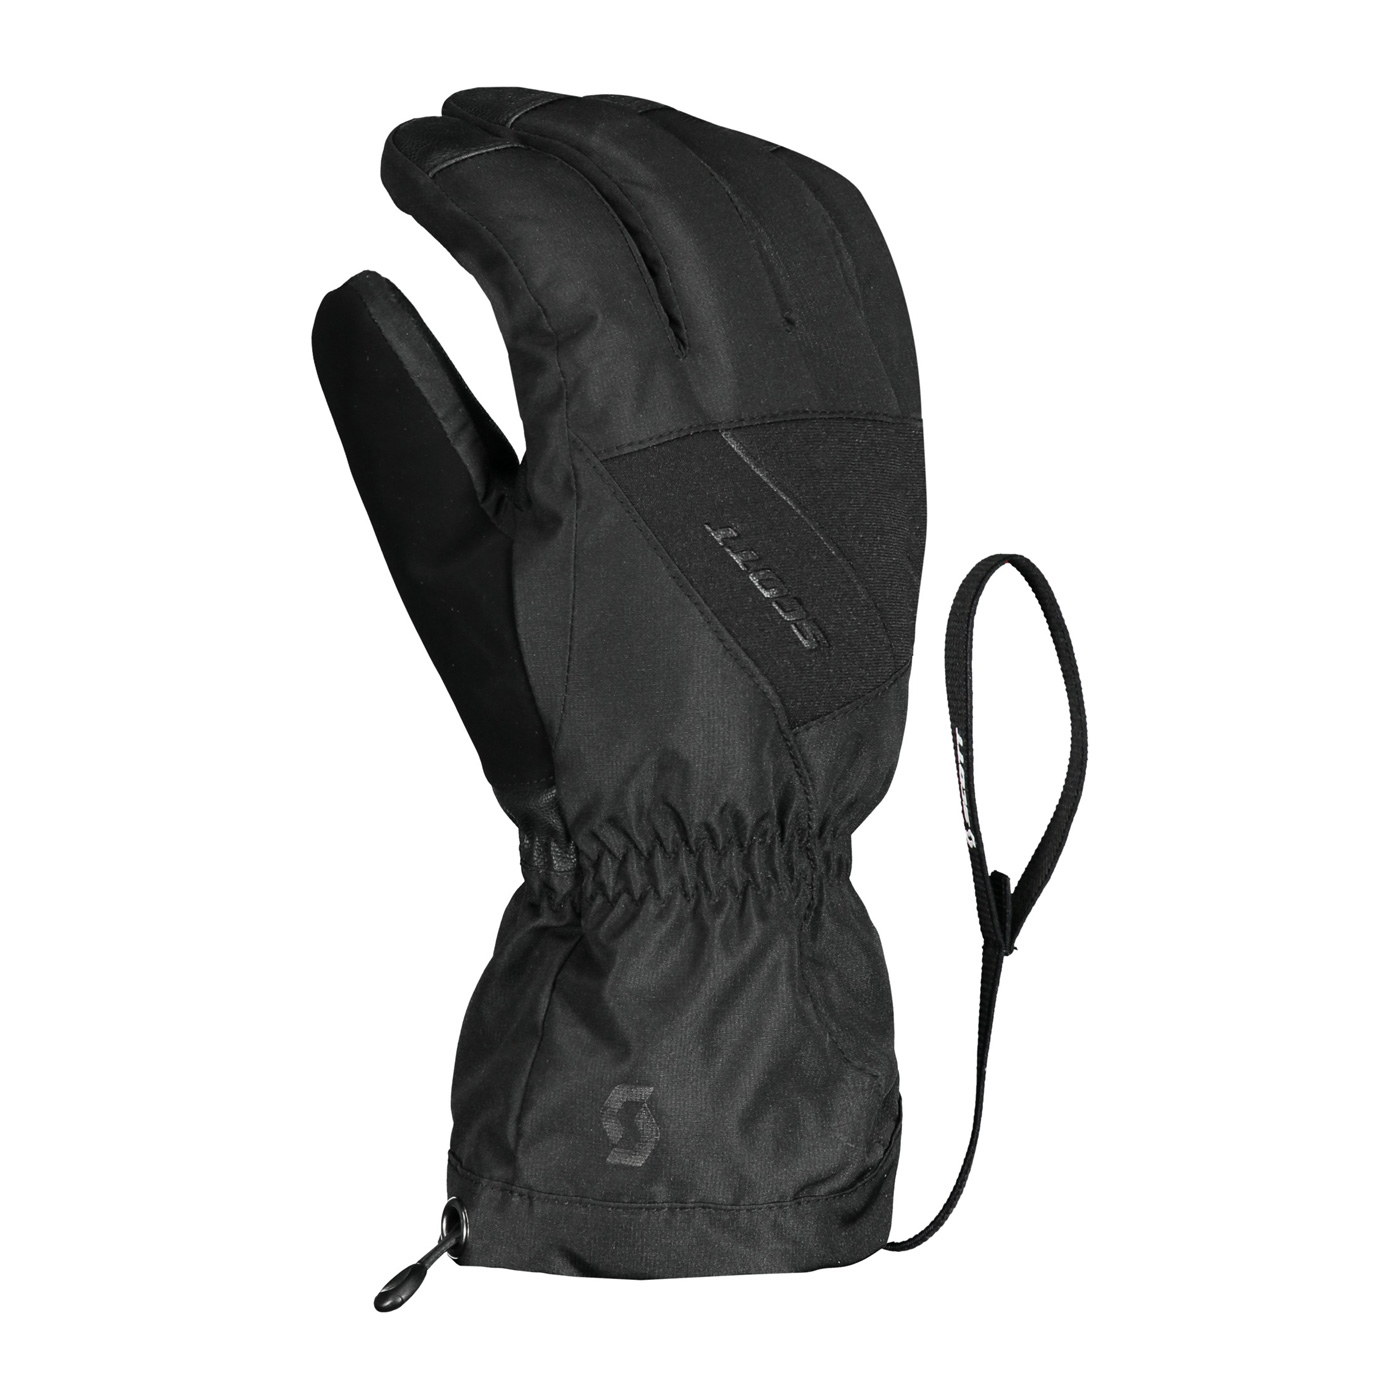 Scott Ultimate GTX Ski Glove- Black - S, BLACK